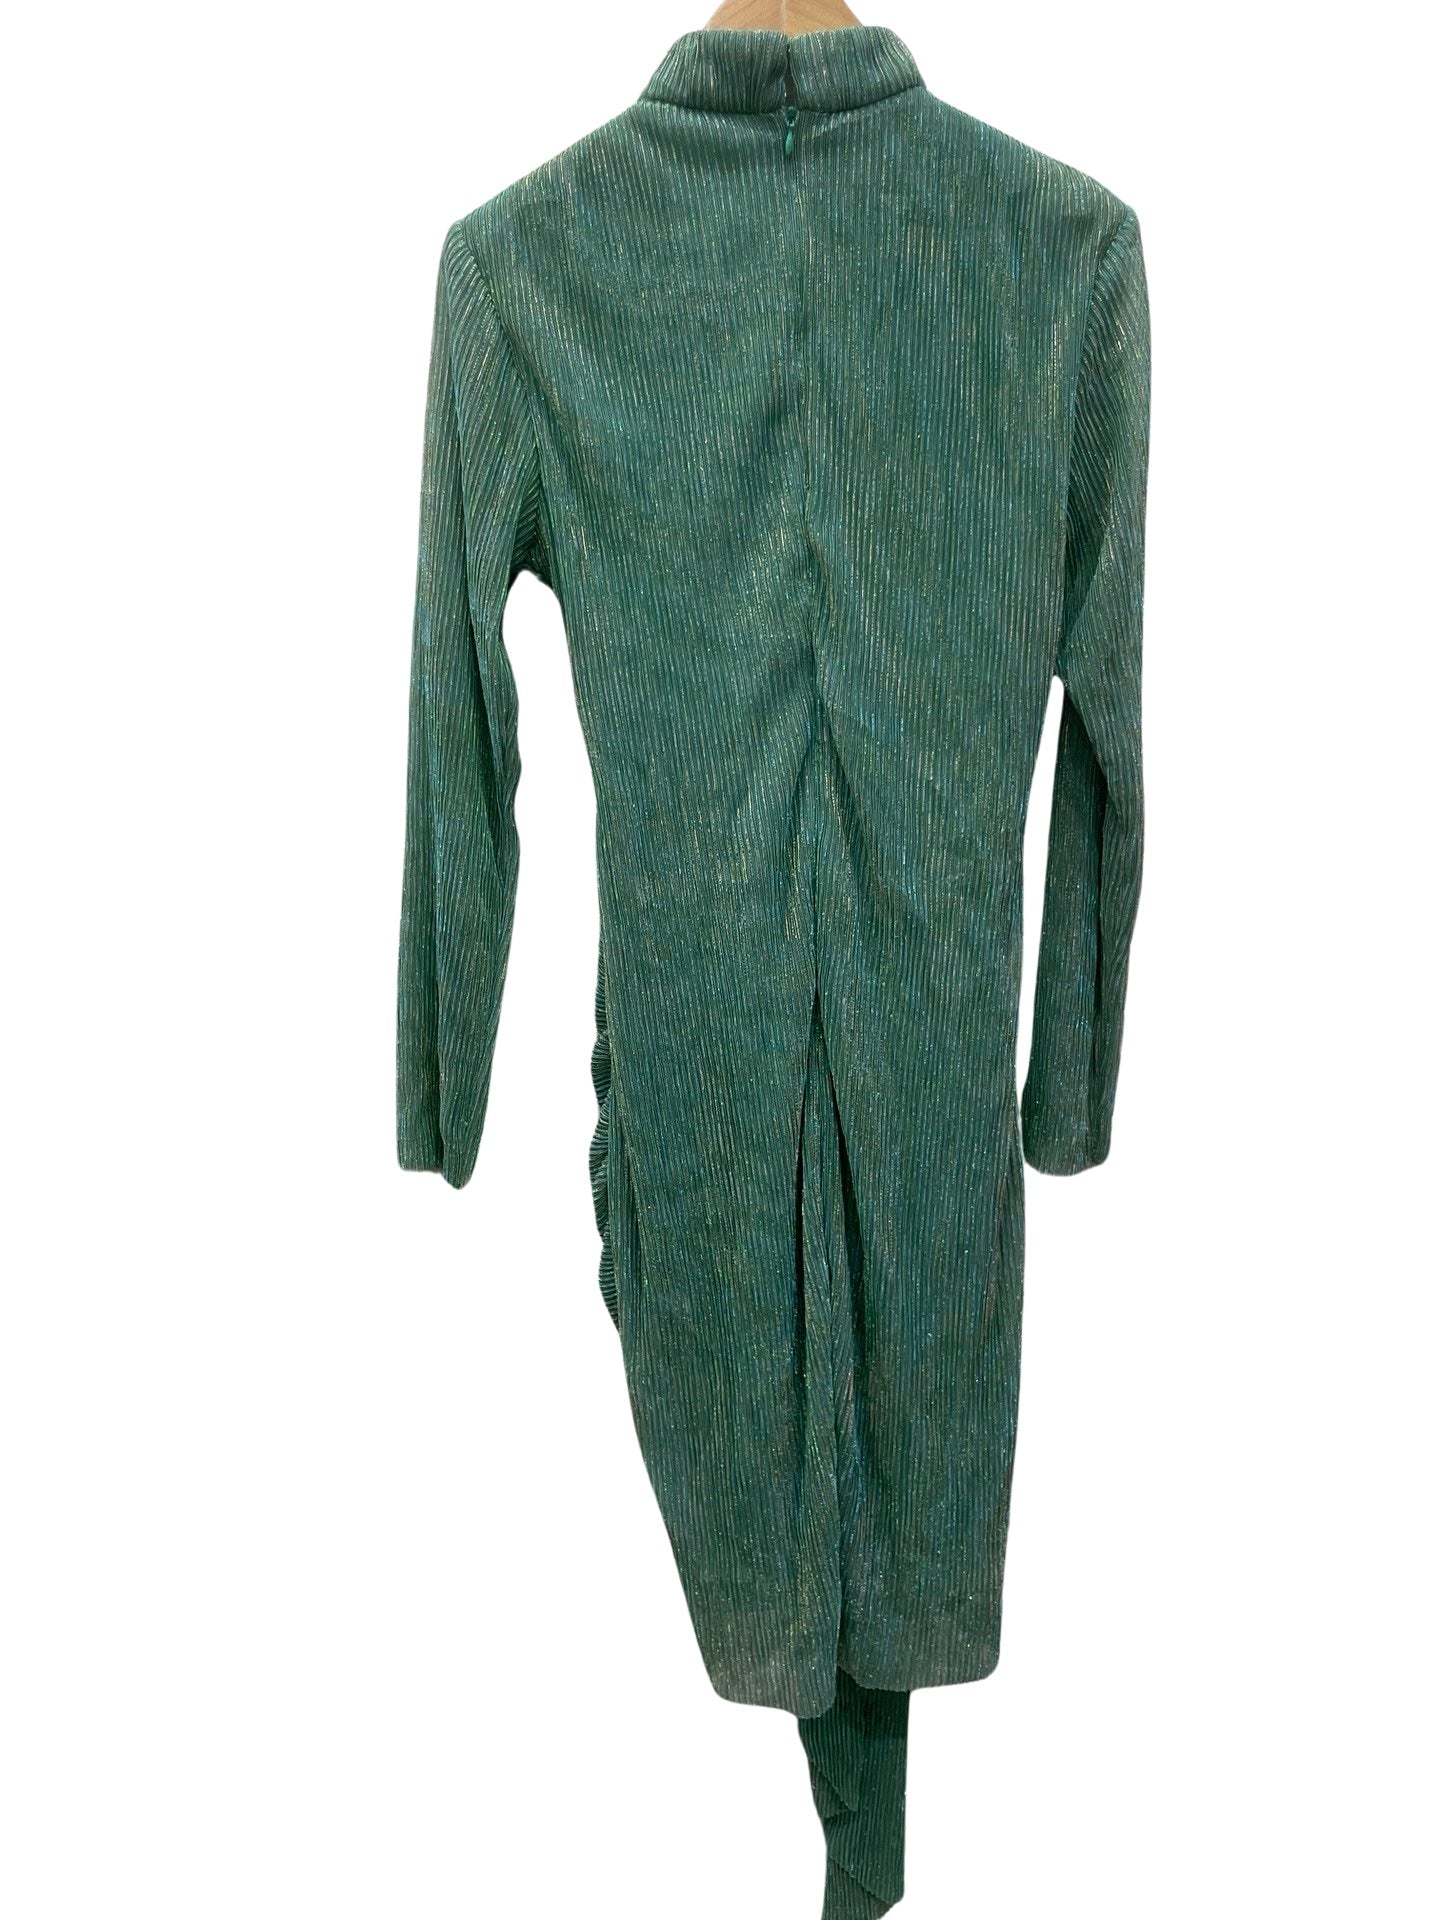 Atoir Green Shimmery Dress 8